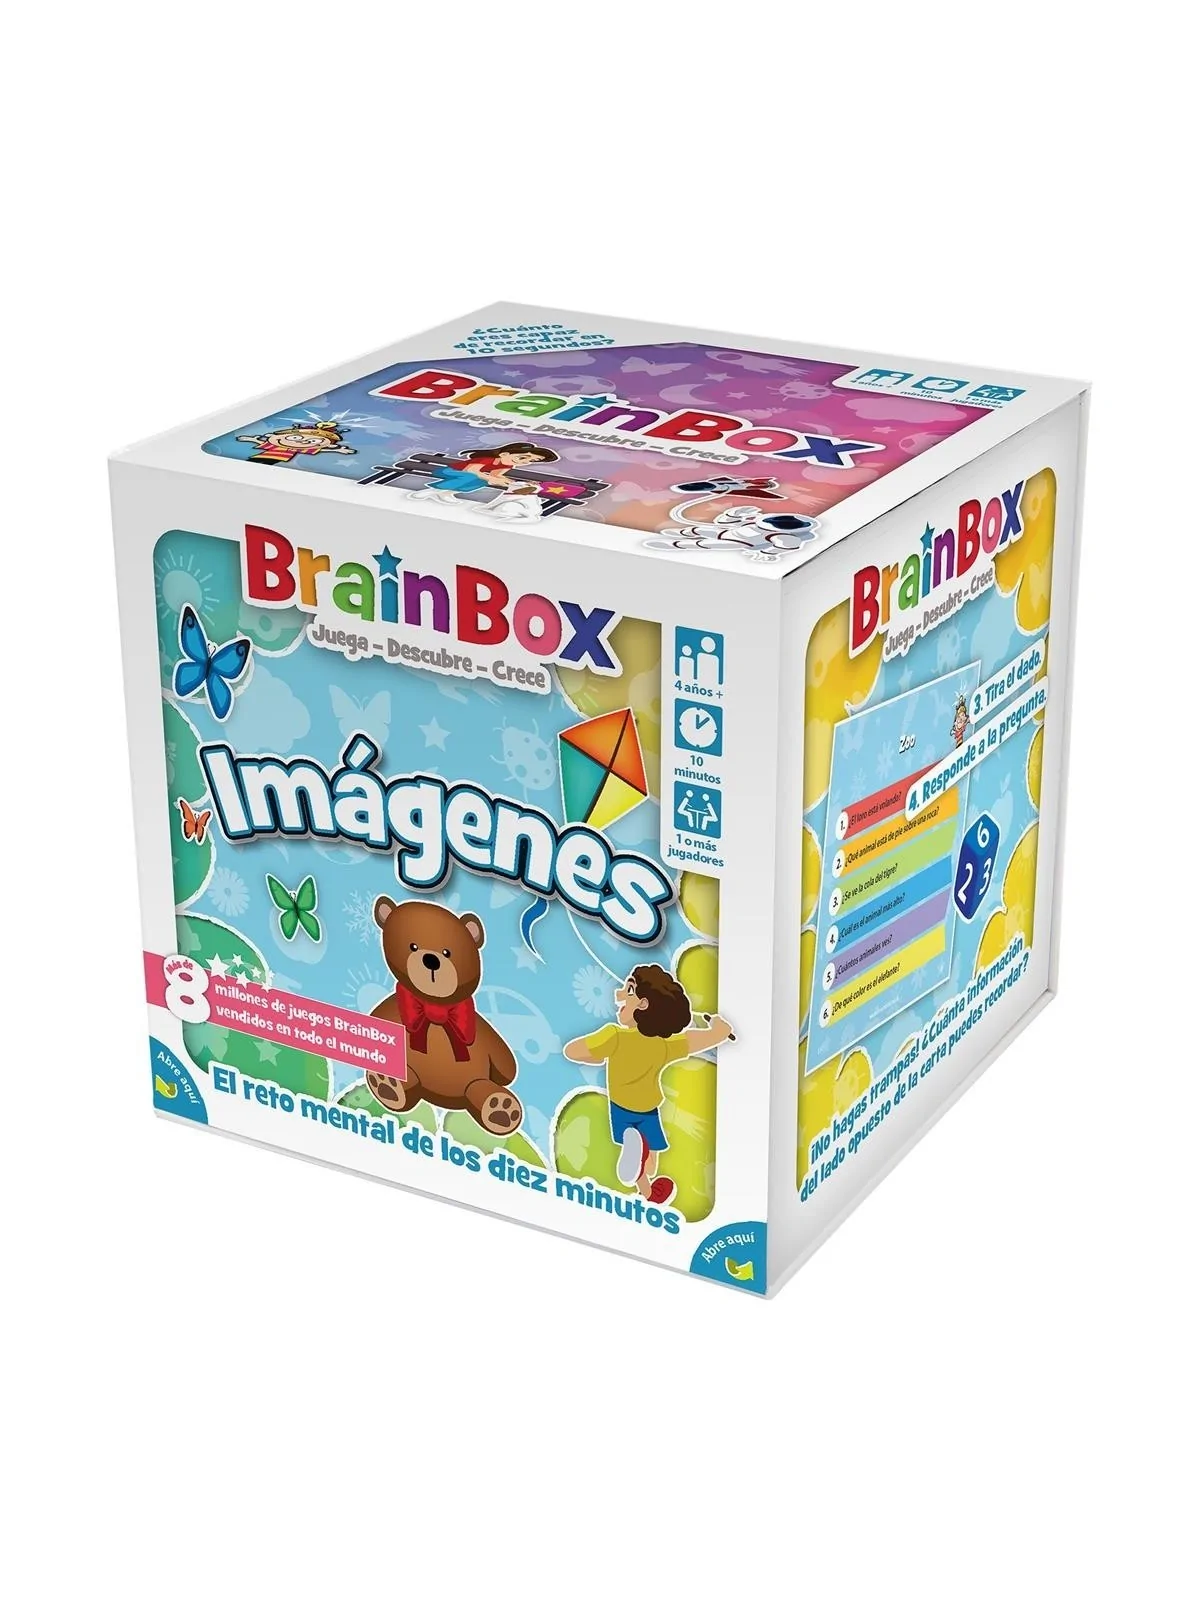 Comprar Brainbox Imagenes barato al mejor precio 15,29 € de Asmodee